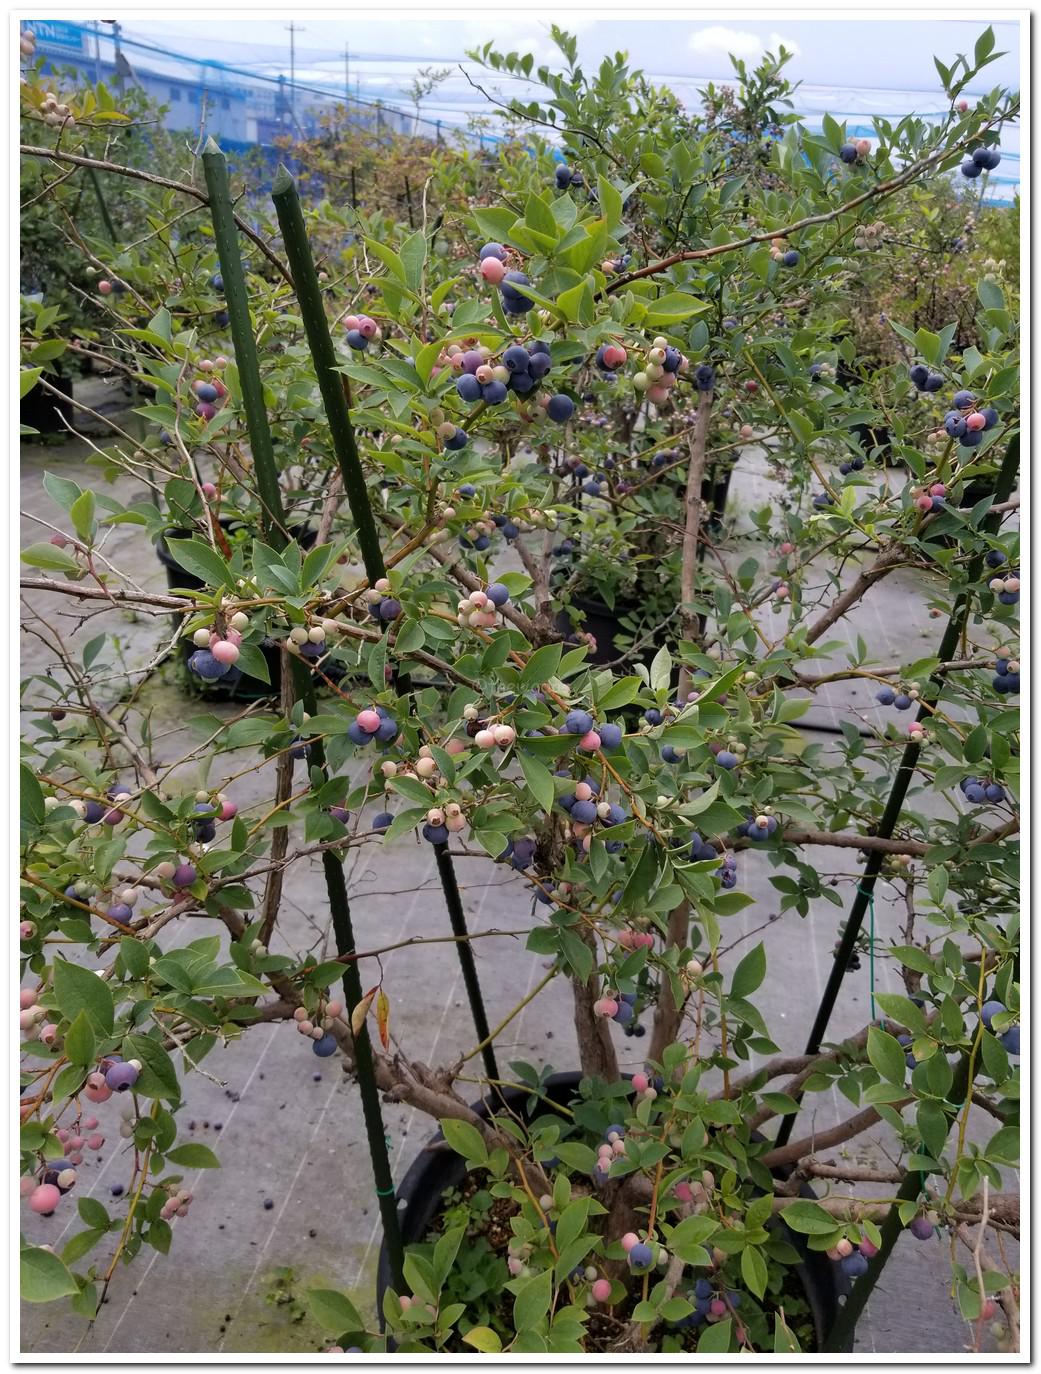 Blueberry Picking at Setouchi Fruits Garden (Setouchi City)